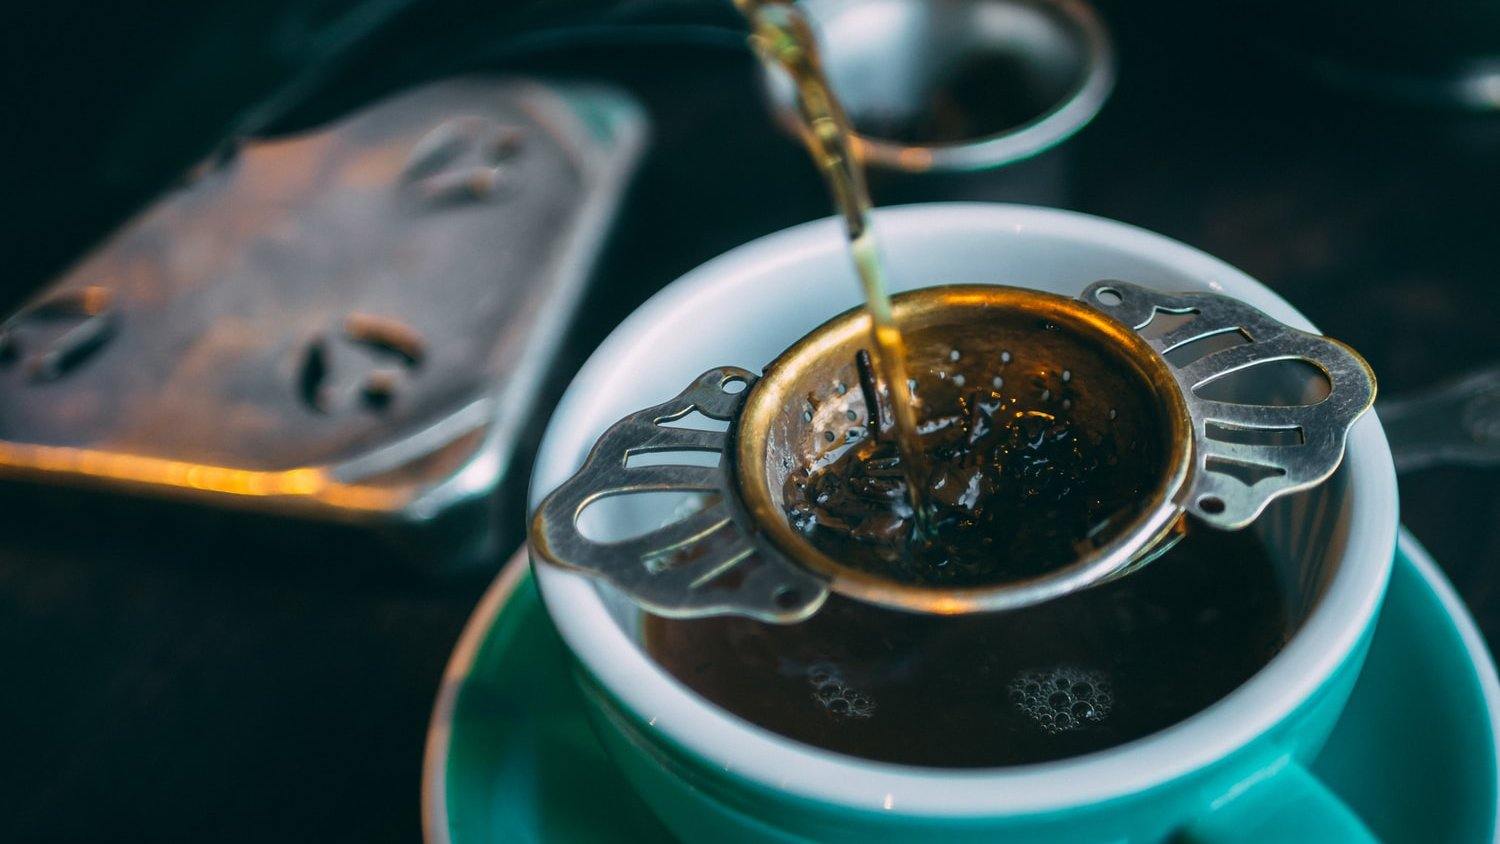 Tea Filters, Strainers & More - La Boheme Cafe - Pražírna výběrové kávy